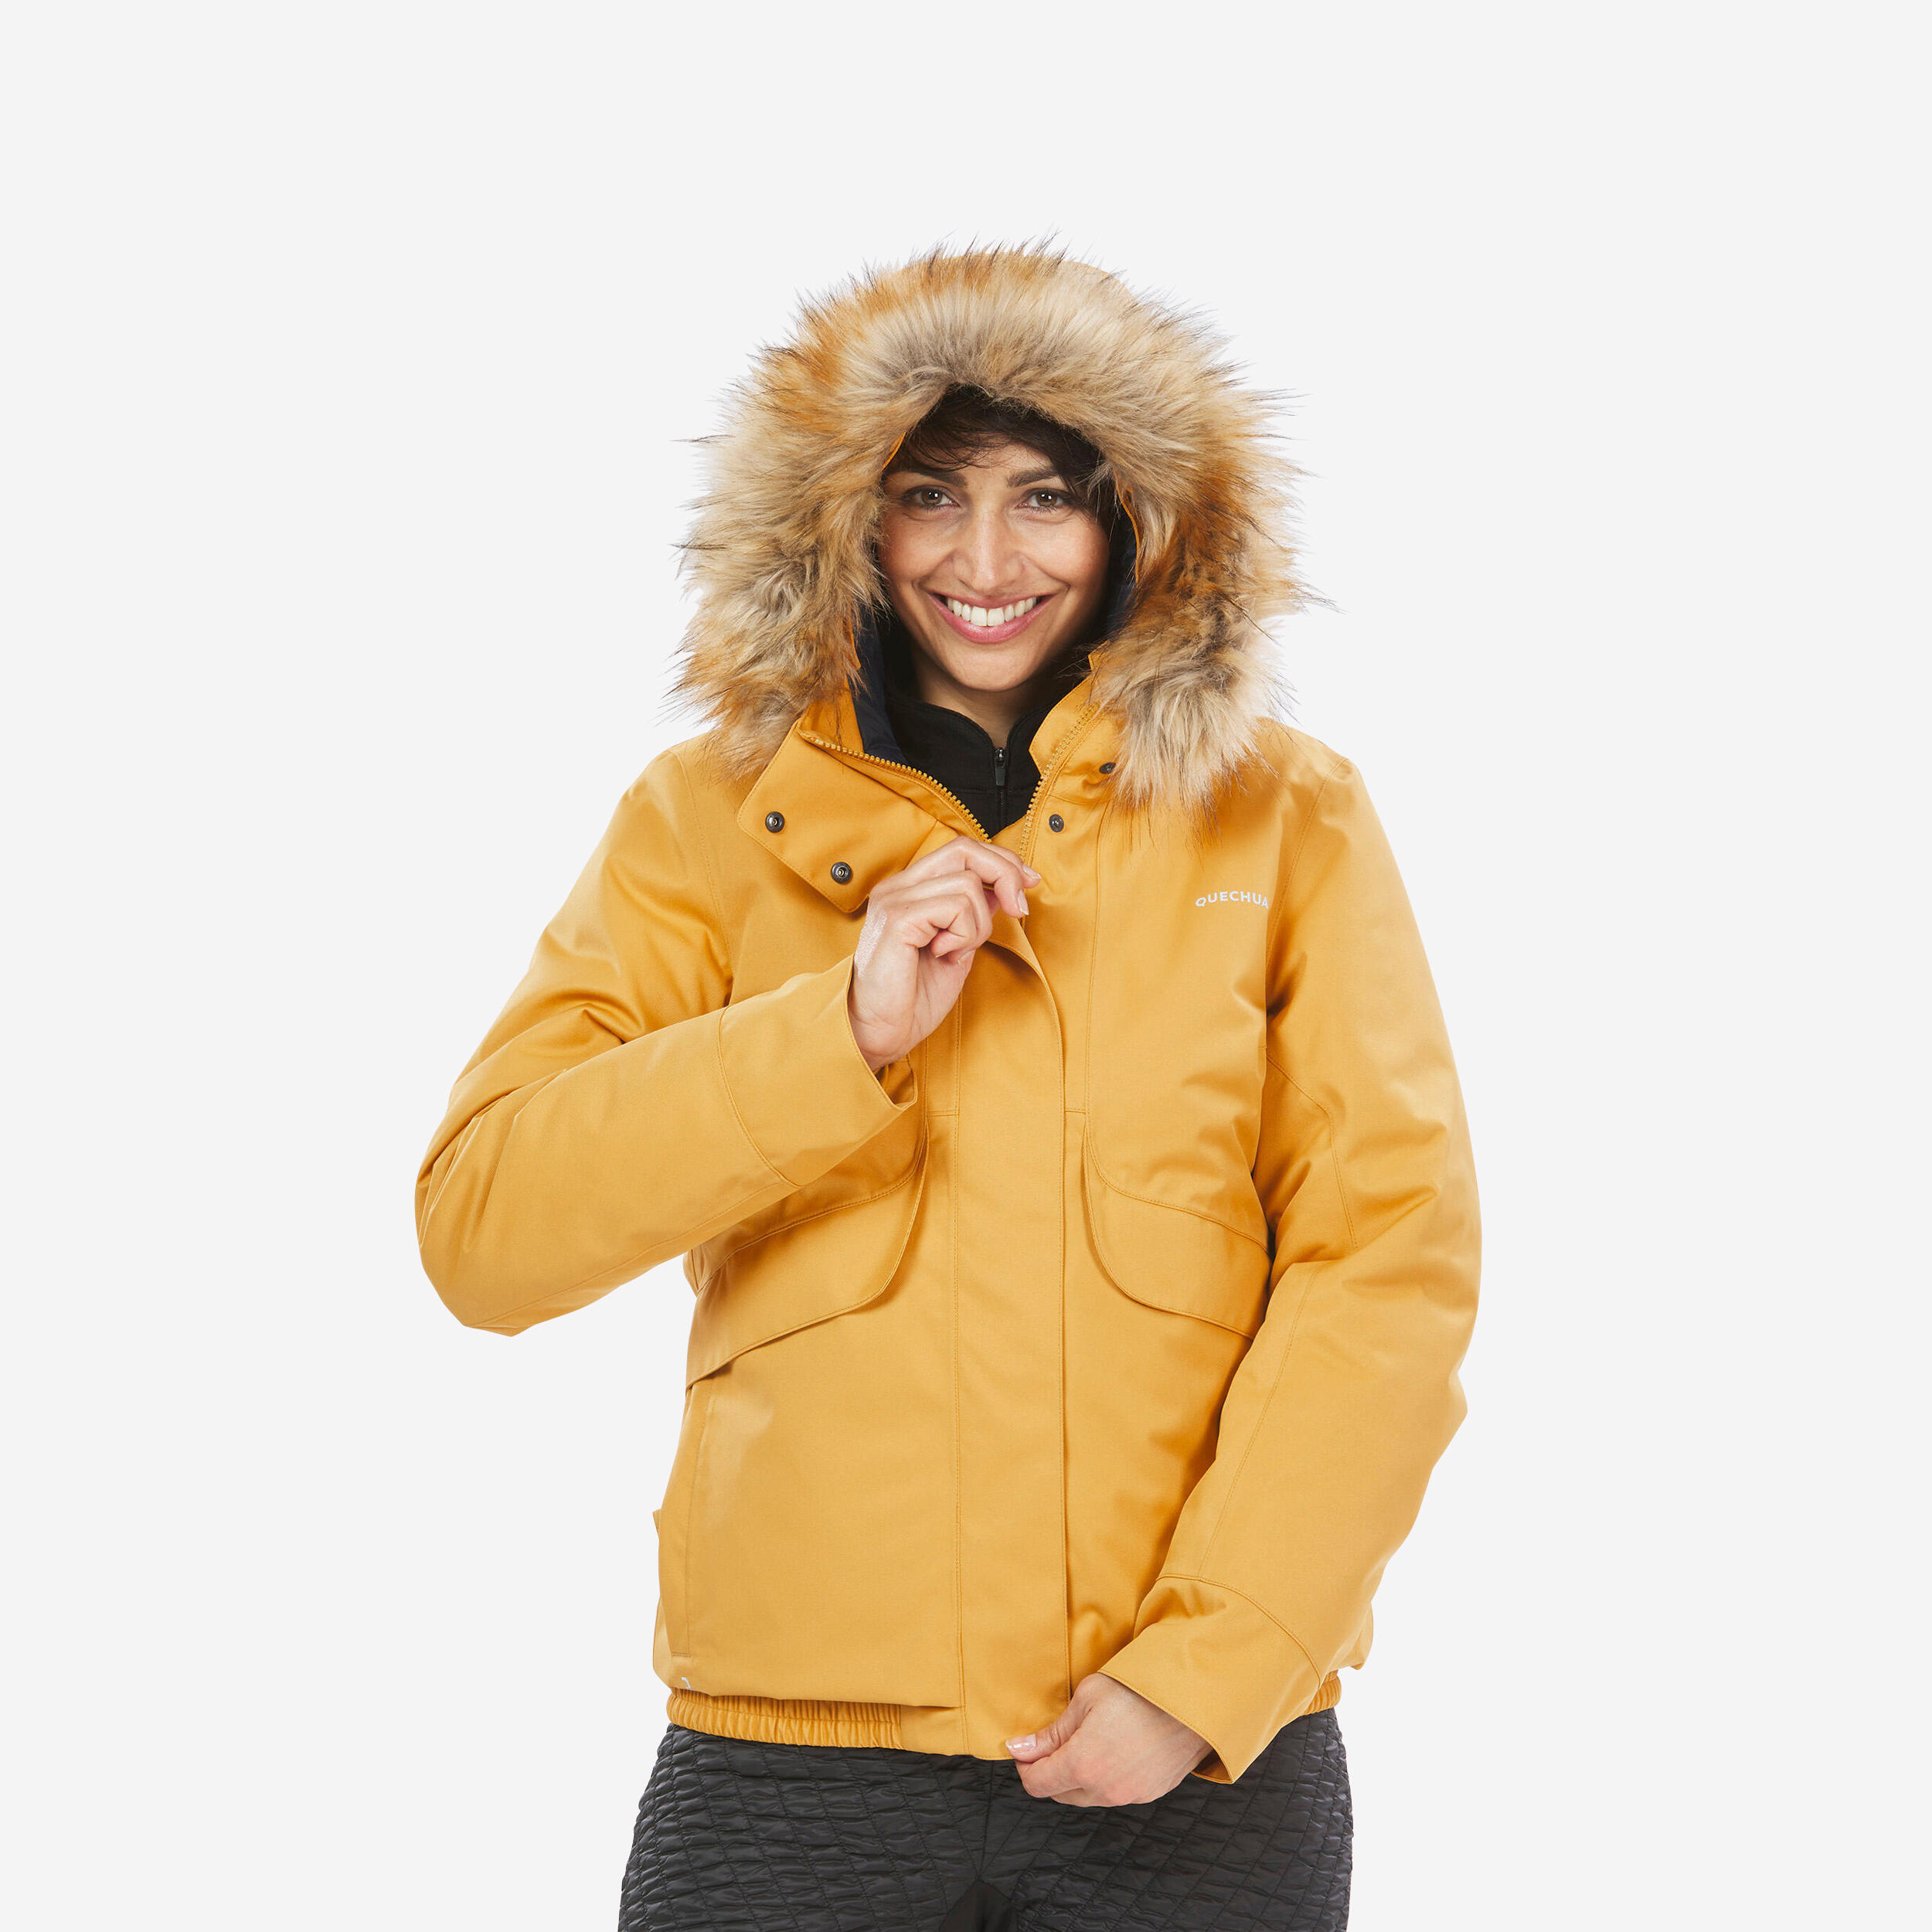 Women’s waterproof winter hiking jacket - SH500 -8°C 1/14